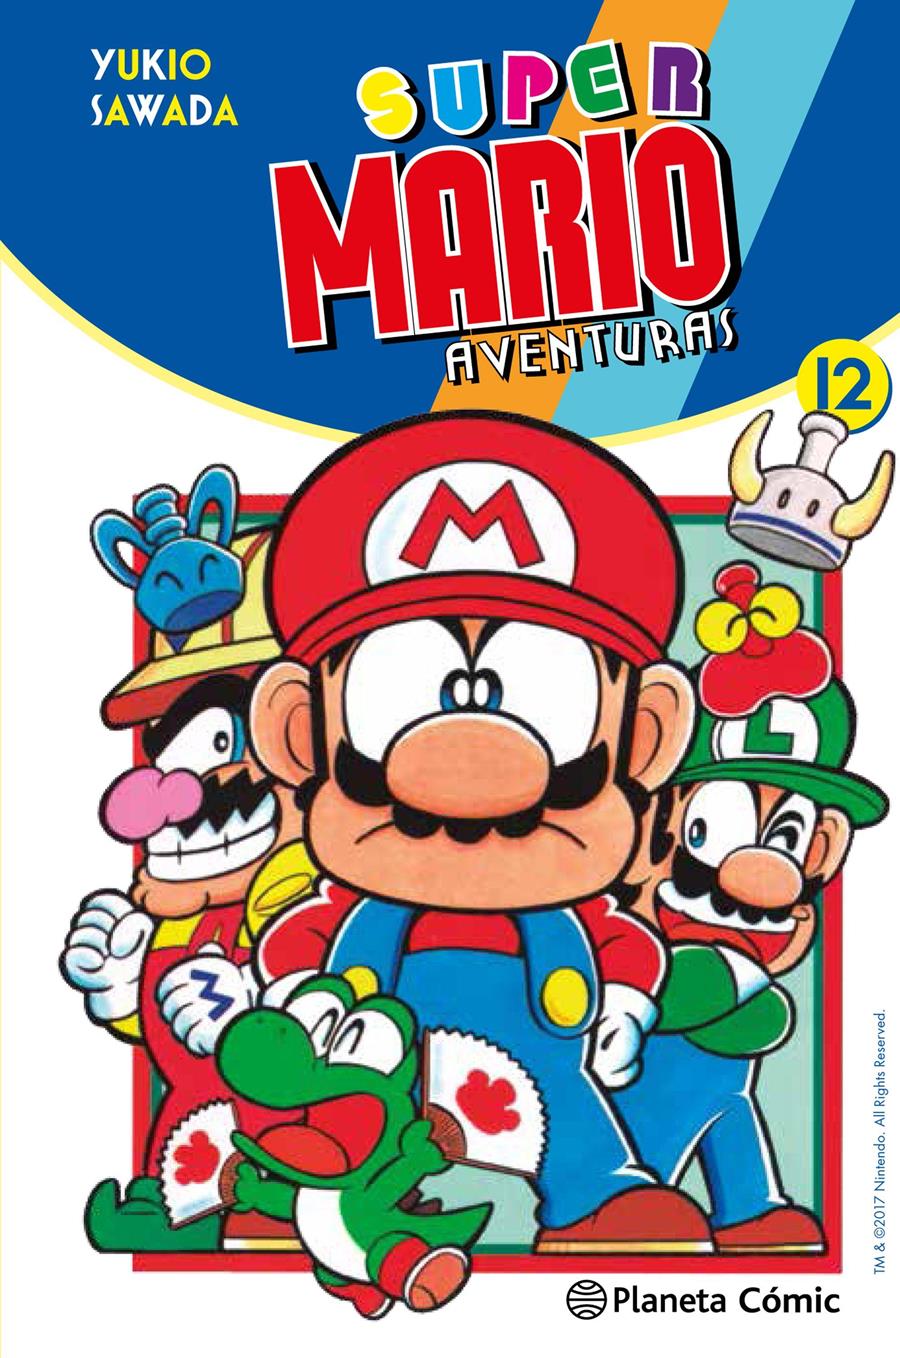 Super Mario nº 12 | N0518-PLA20 | Yukio Sawada | Terra de Còmic - Tu tienda de cómics online especializada en cómics, manga y merchandising